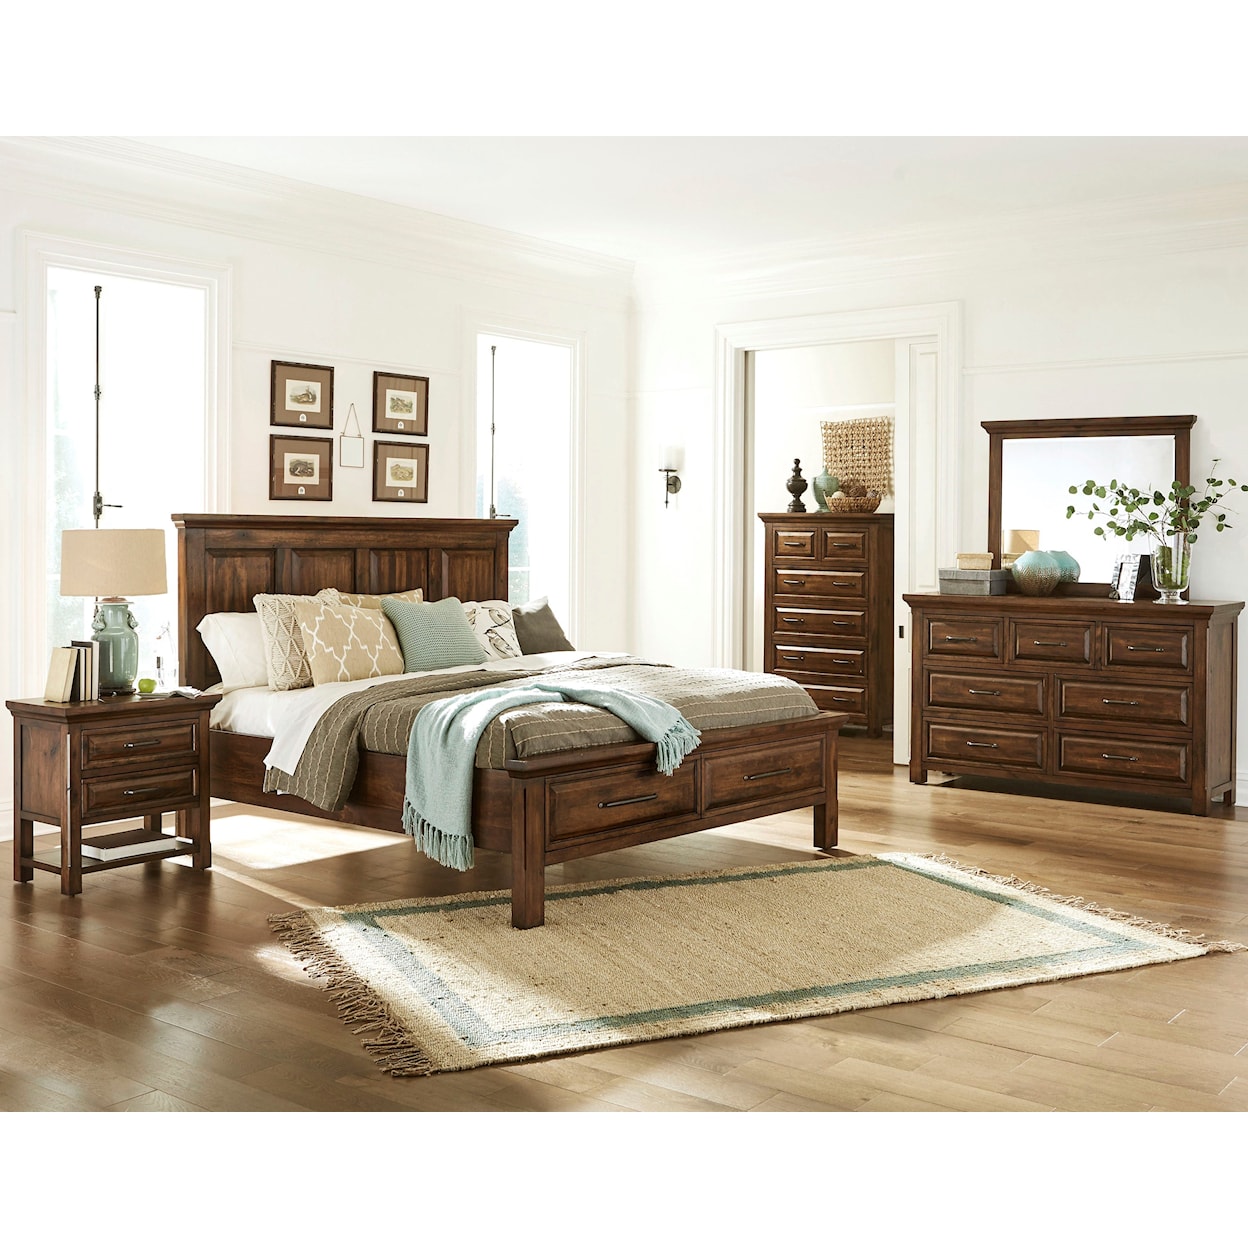 Napa Furniture Design Hill Crest King Storage Bed